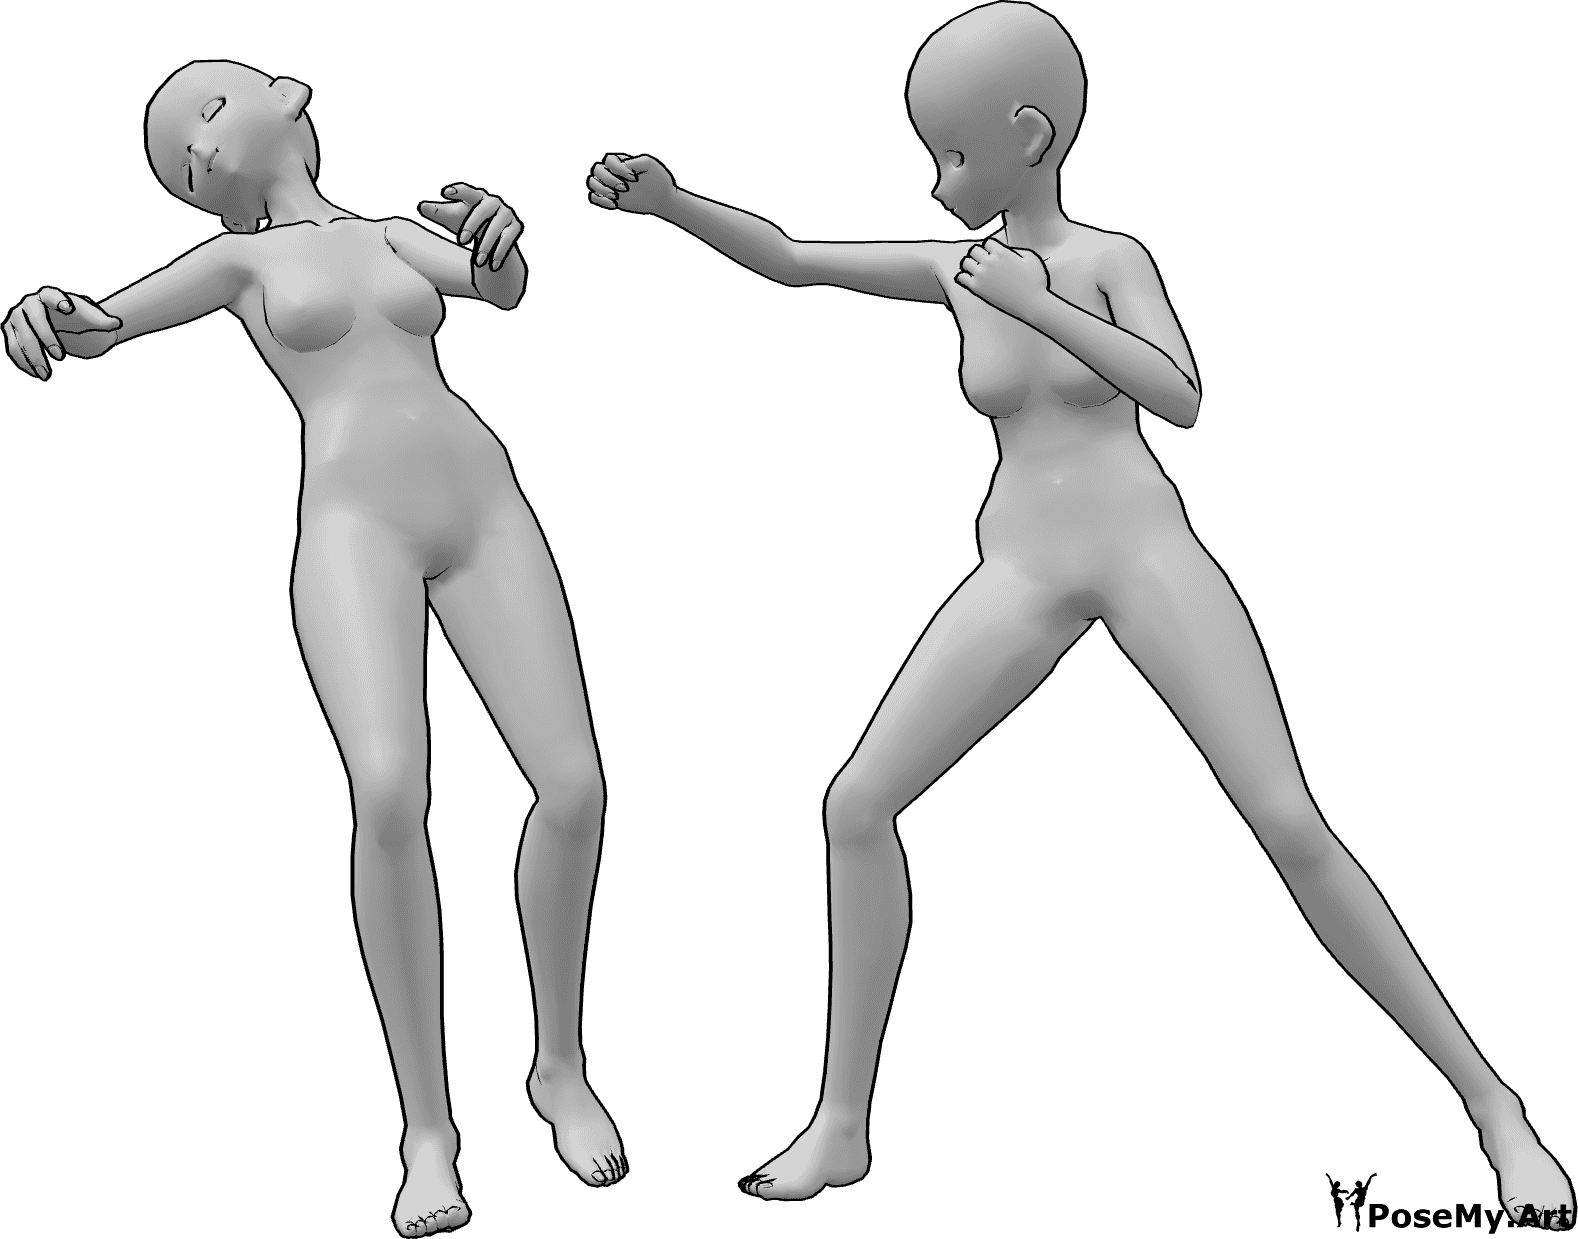 Référence des poses- Pose de la chute d'un coup de poing féminin - Une femme animée tombe inconsciemment en arrière après avoir reçu un coup de poing au visage.